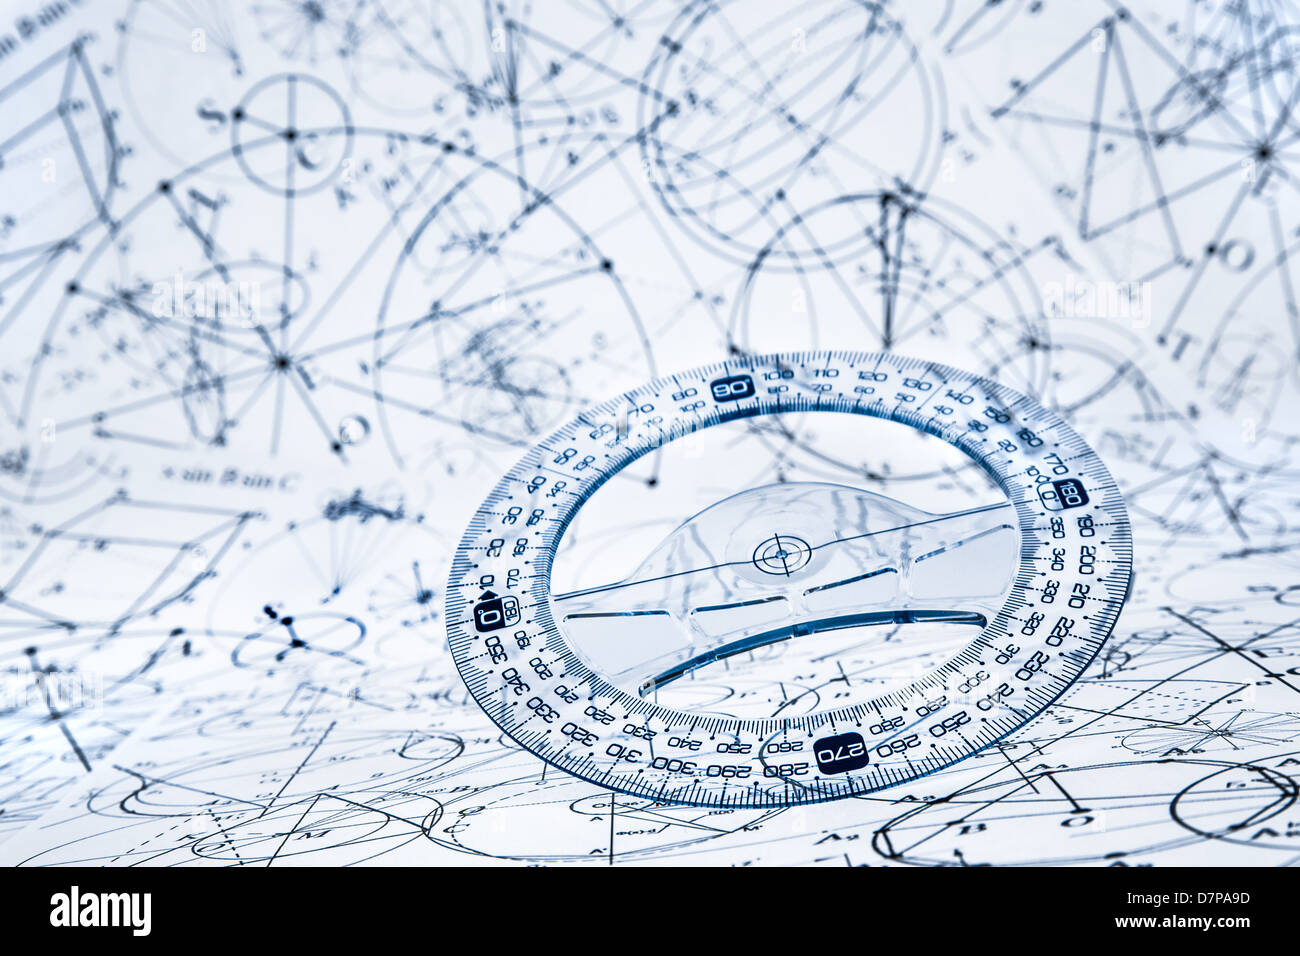 Winkelmesser auf dem Hintergrund von mathematischen Formeln und Algorithmen Stockfoto